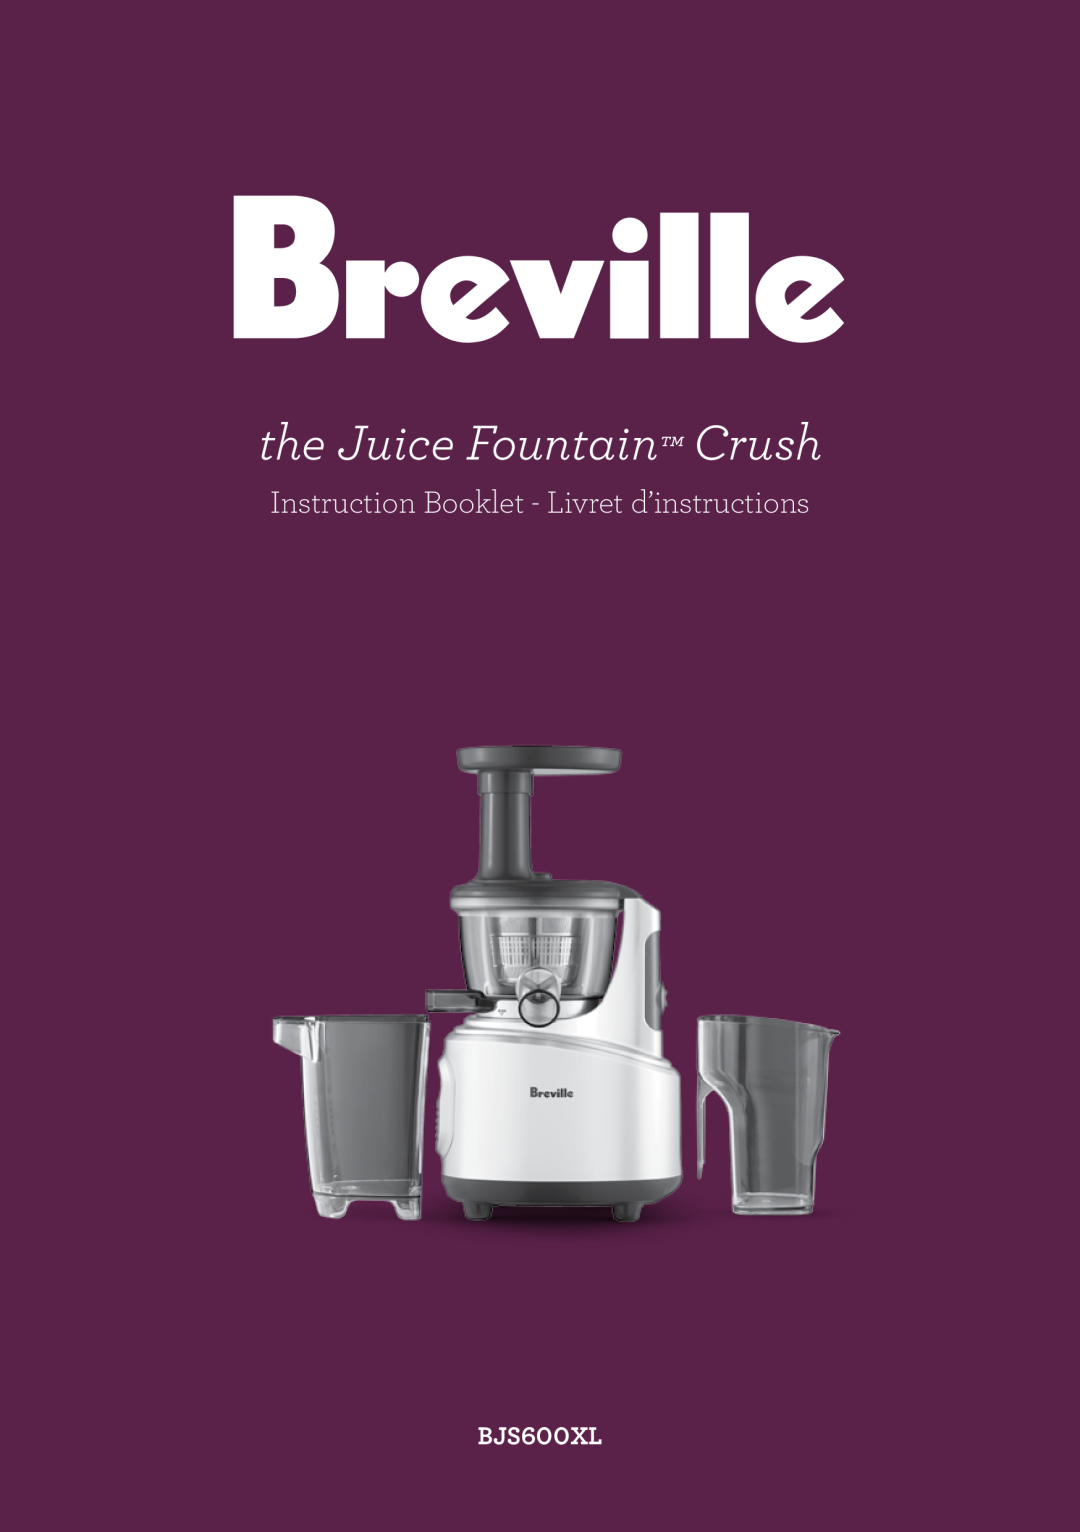 Breville BJS600XL manual the Juice Fountain Crush, Instruction Booklet - Livret d’instructions 